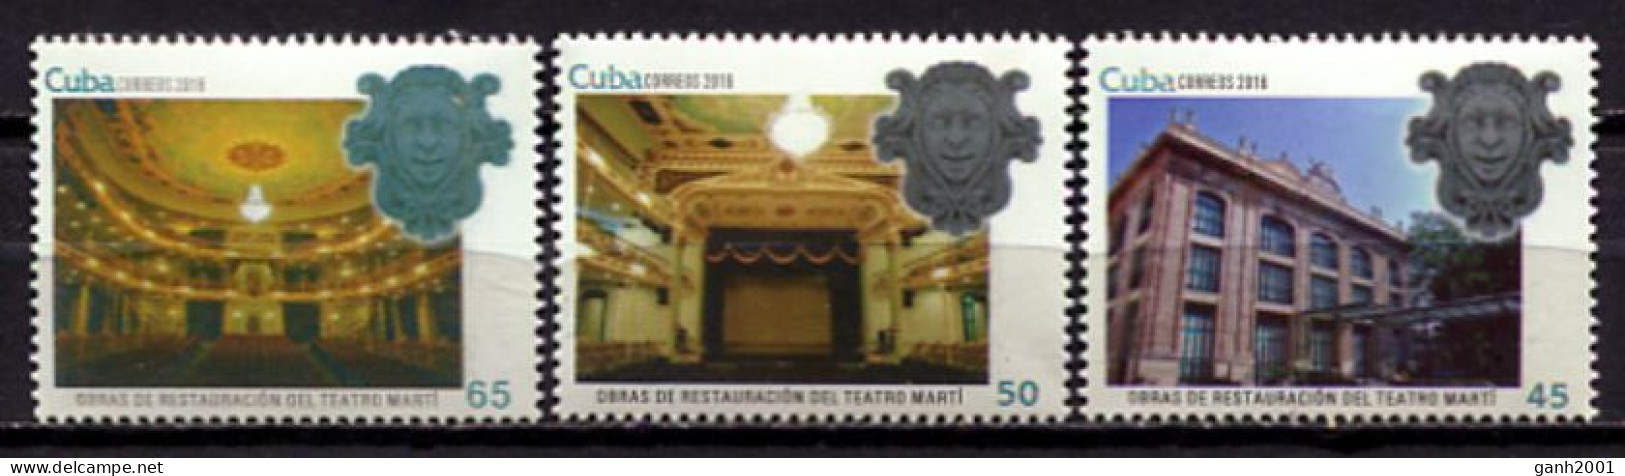 Cuba 2016 / Theatre Jose Marti MNH Teatro Theater / Cu1627  5-20 - Teatro